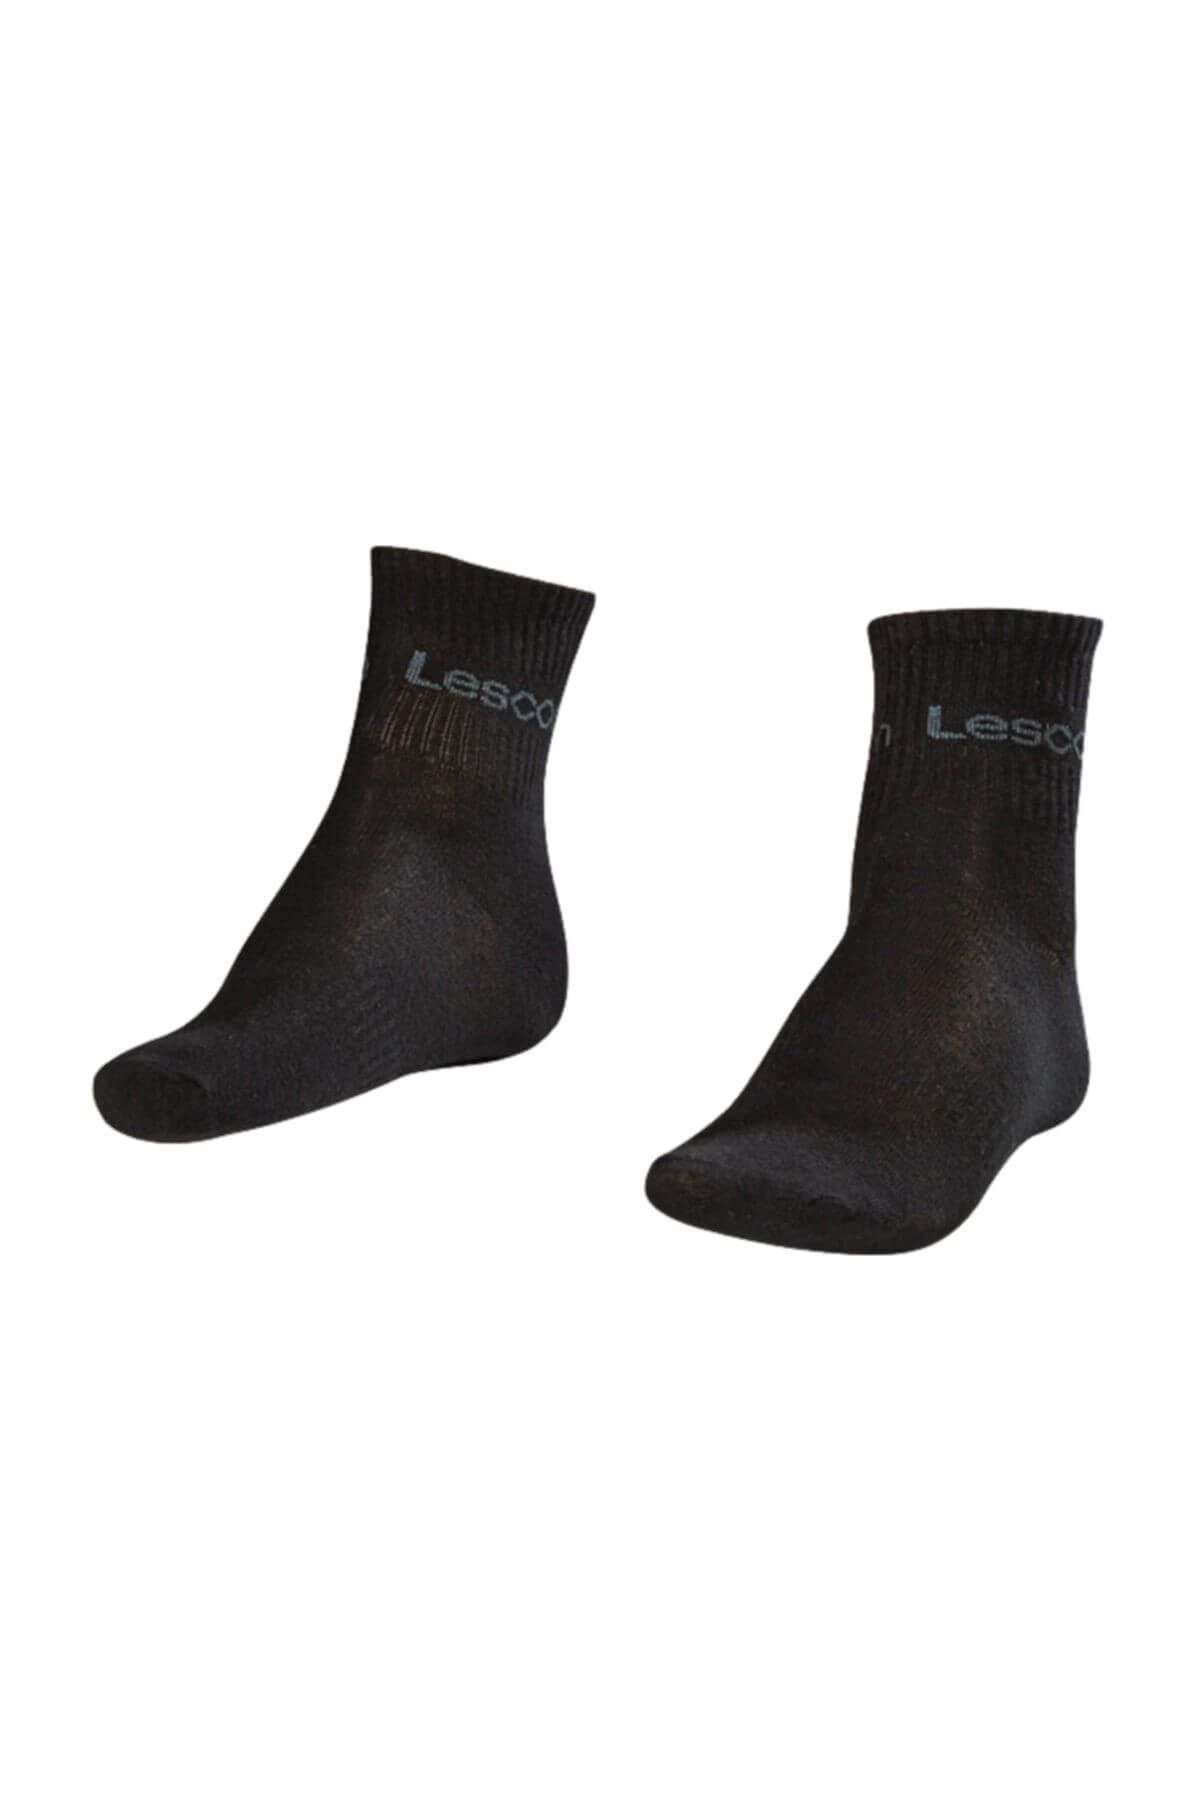 Lescon Unisex Çorap - 17YKEK0L2168